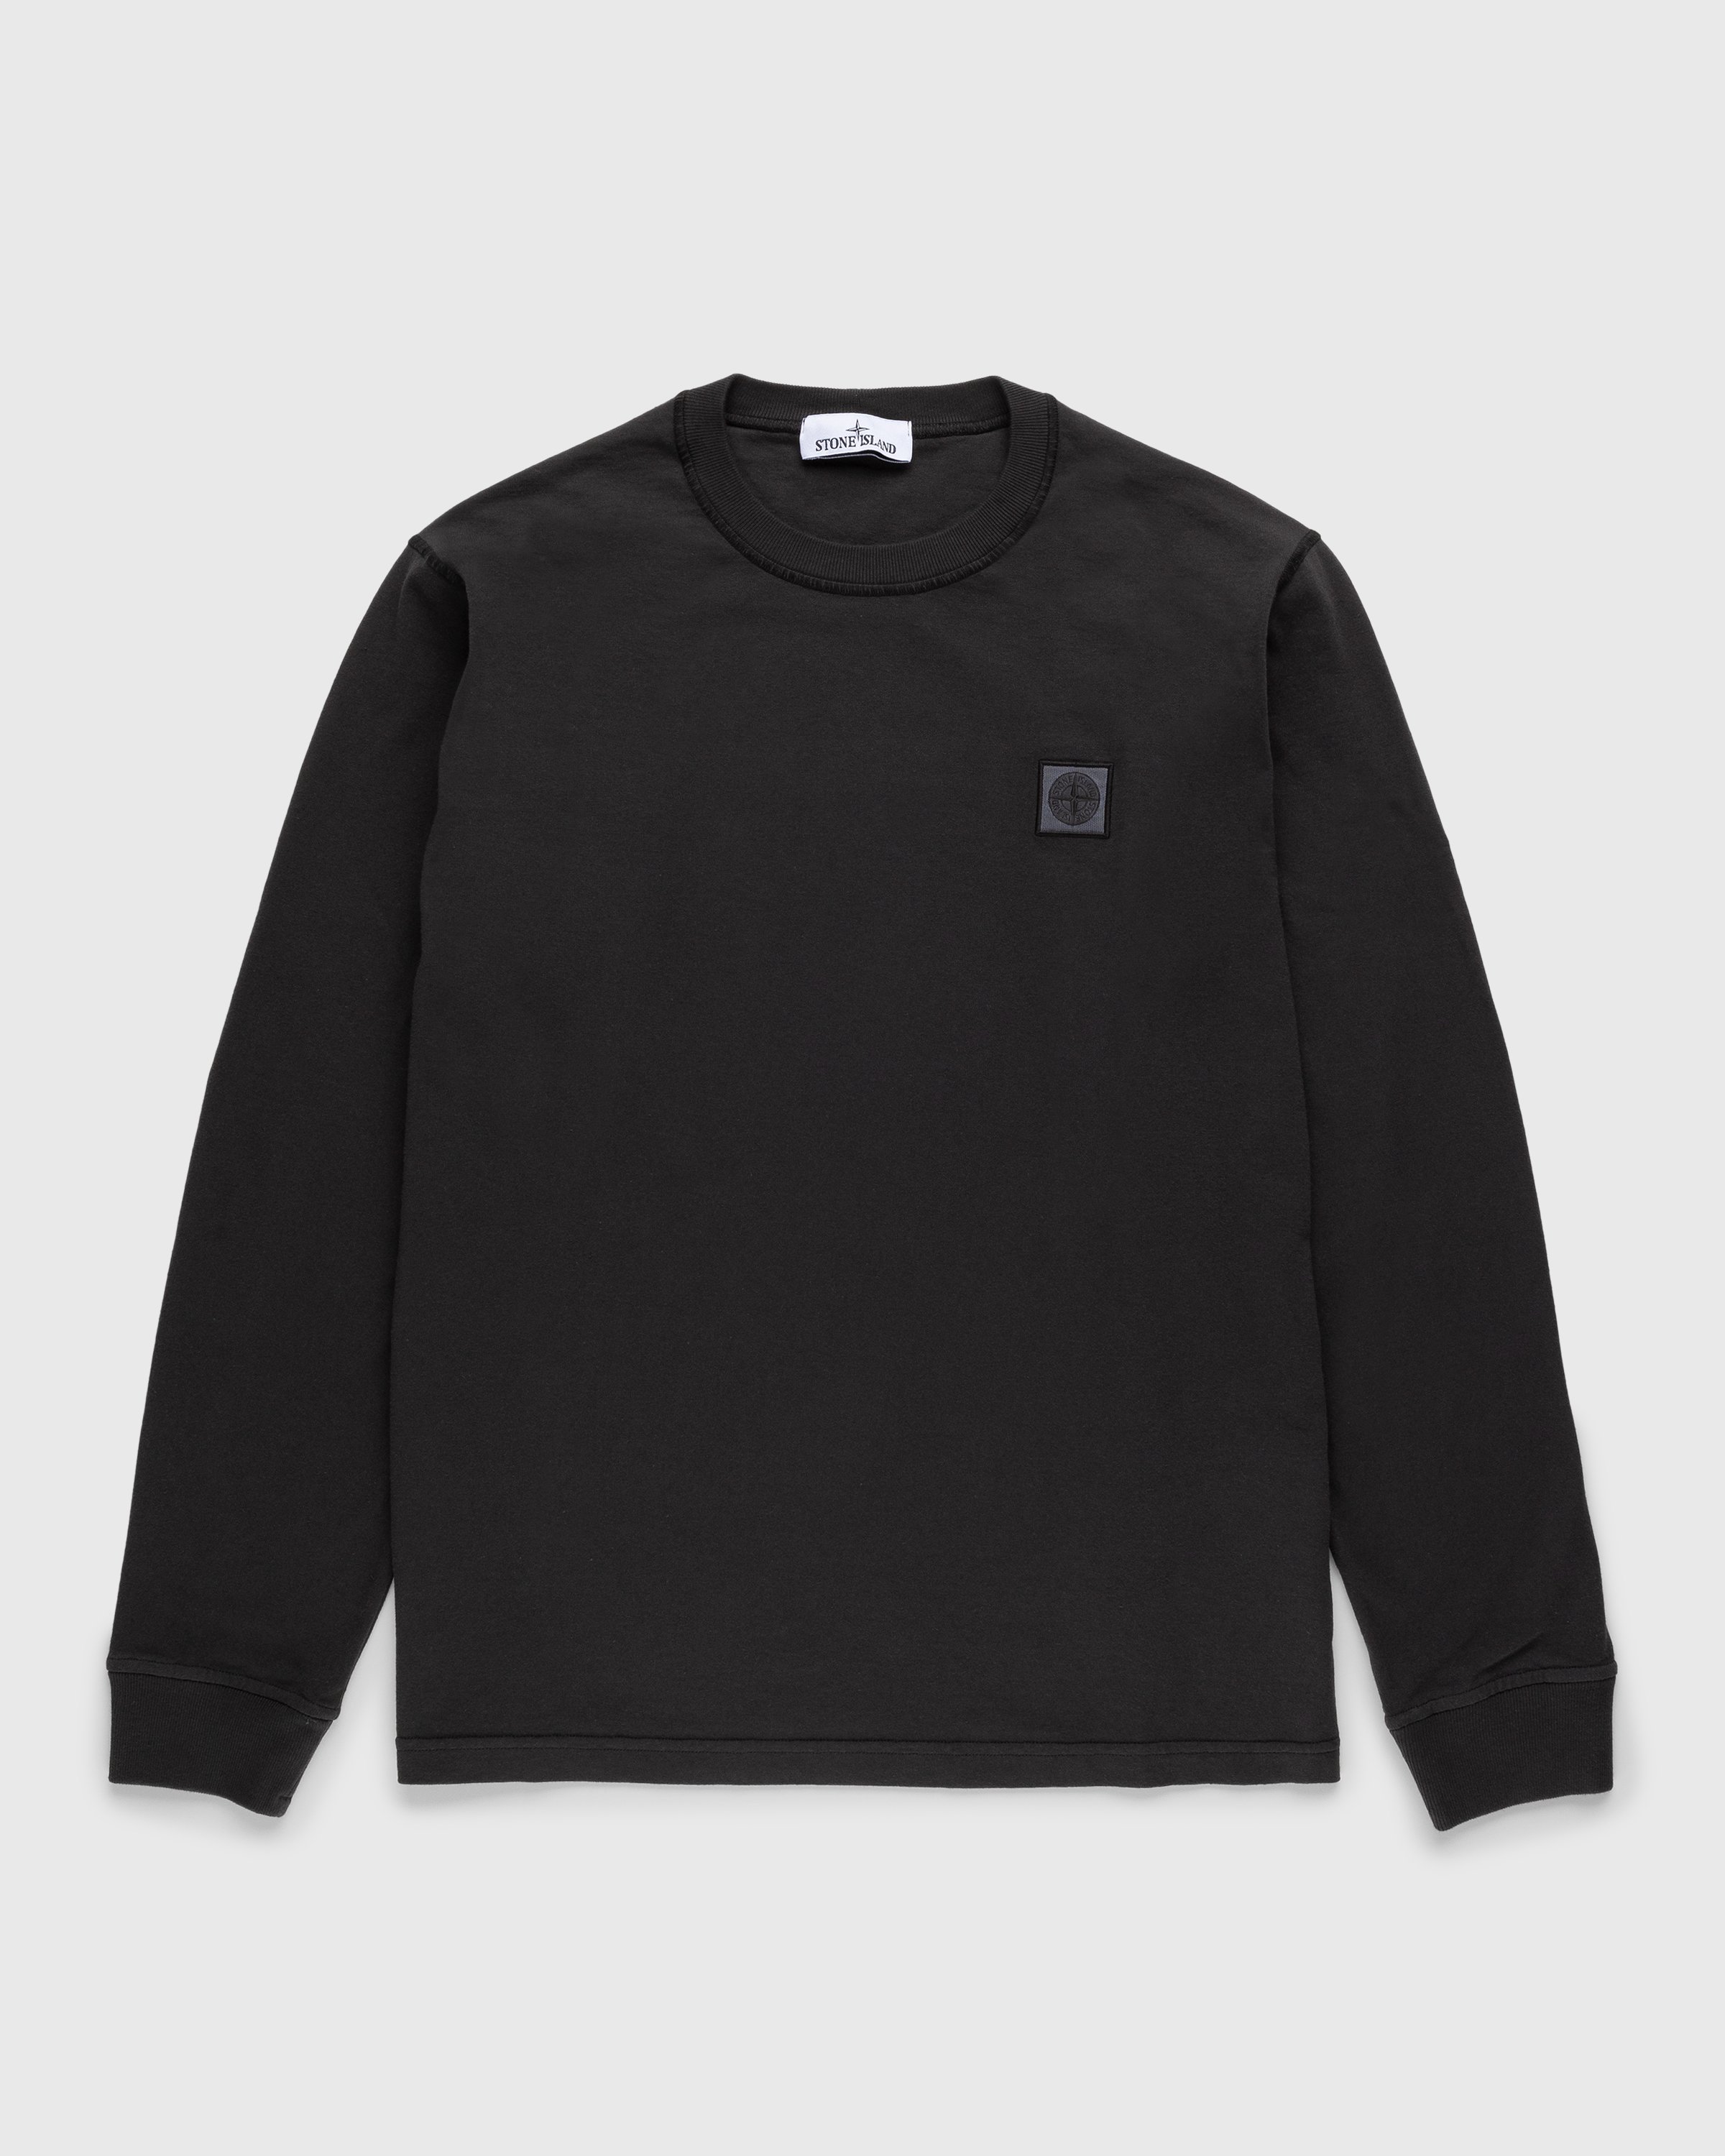 Stone Island - Fissato Longsleeve T-Shirt Charcoal - Clothing - Grey - Image 1